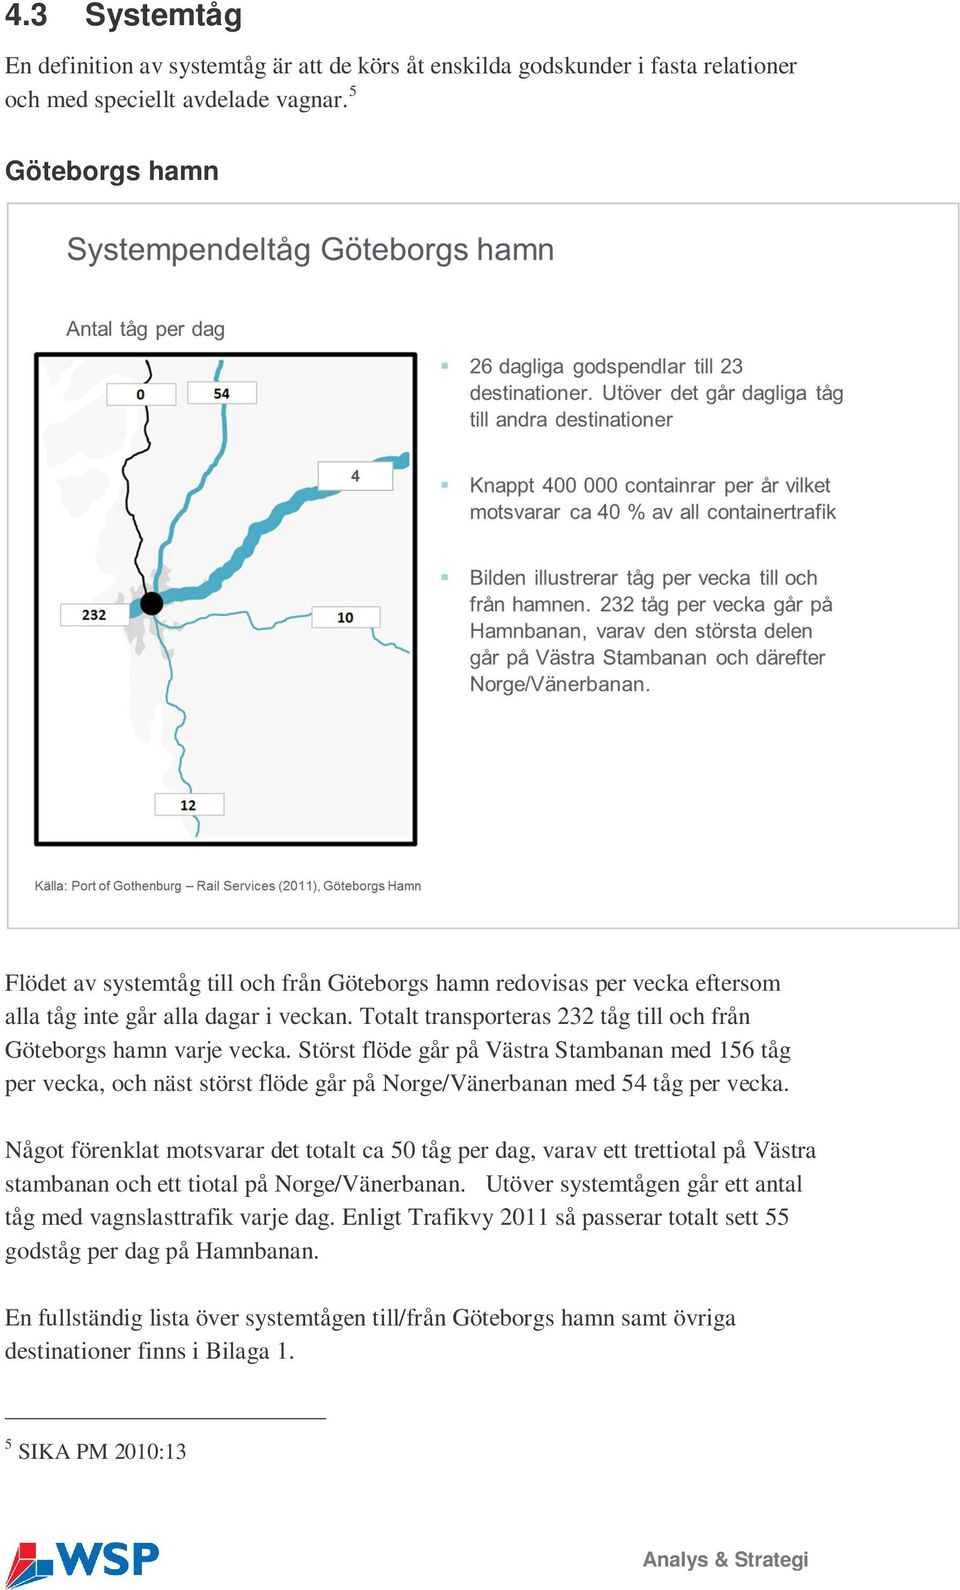 Totalt transporteras 232 tåg till och från Göteborgs hamn varje vecka. Störst flöde går på Västra Stambanan med 156 tåg per vecka, och näst störst flöde går på Norge/Vänerbanan med 54 tåg per vecka.